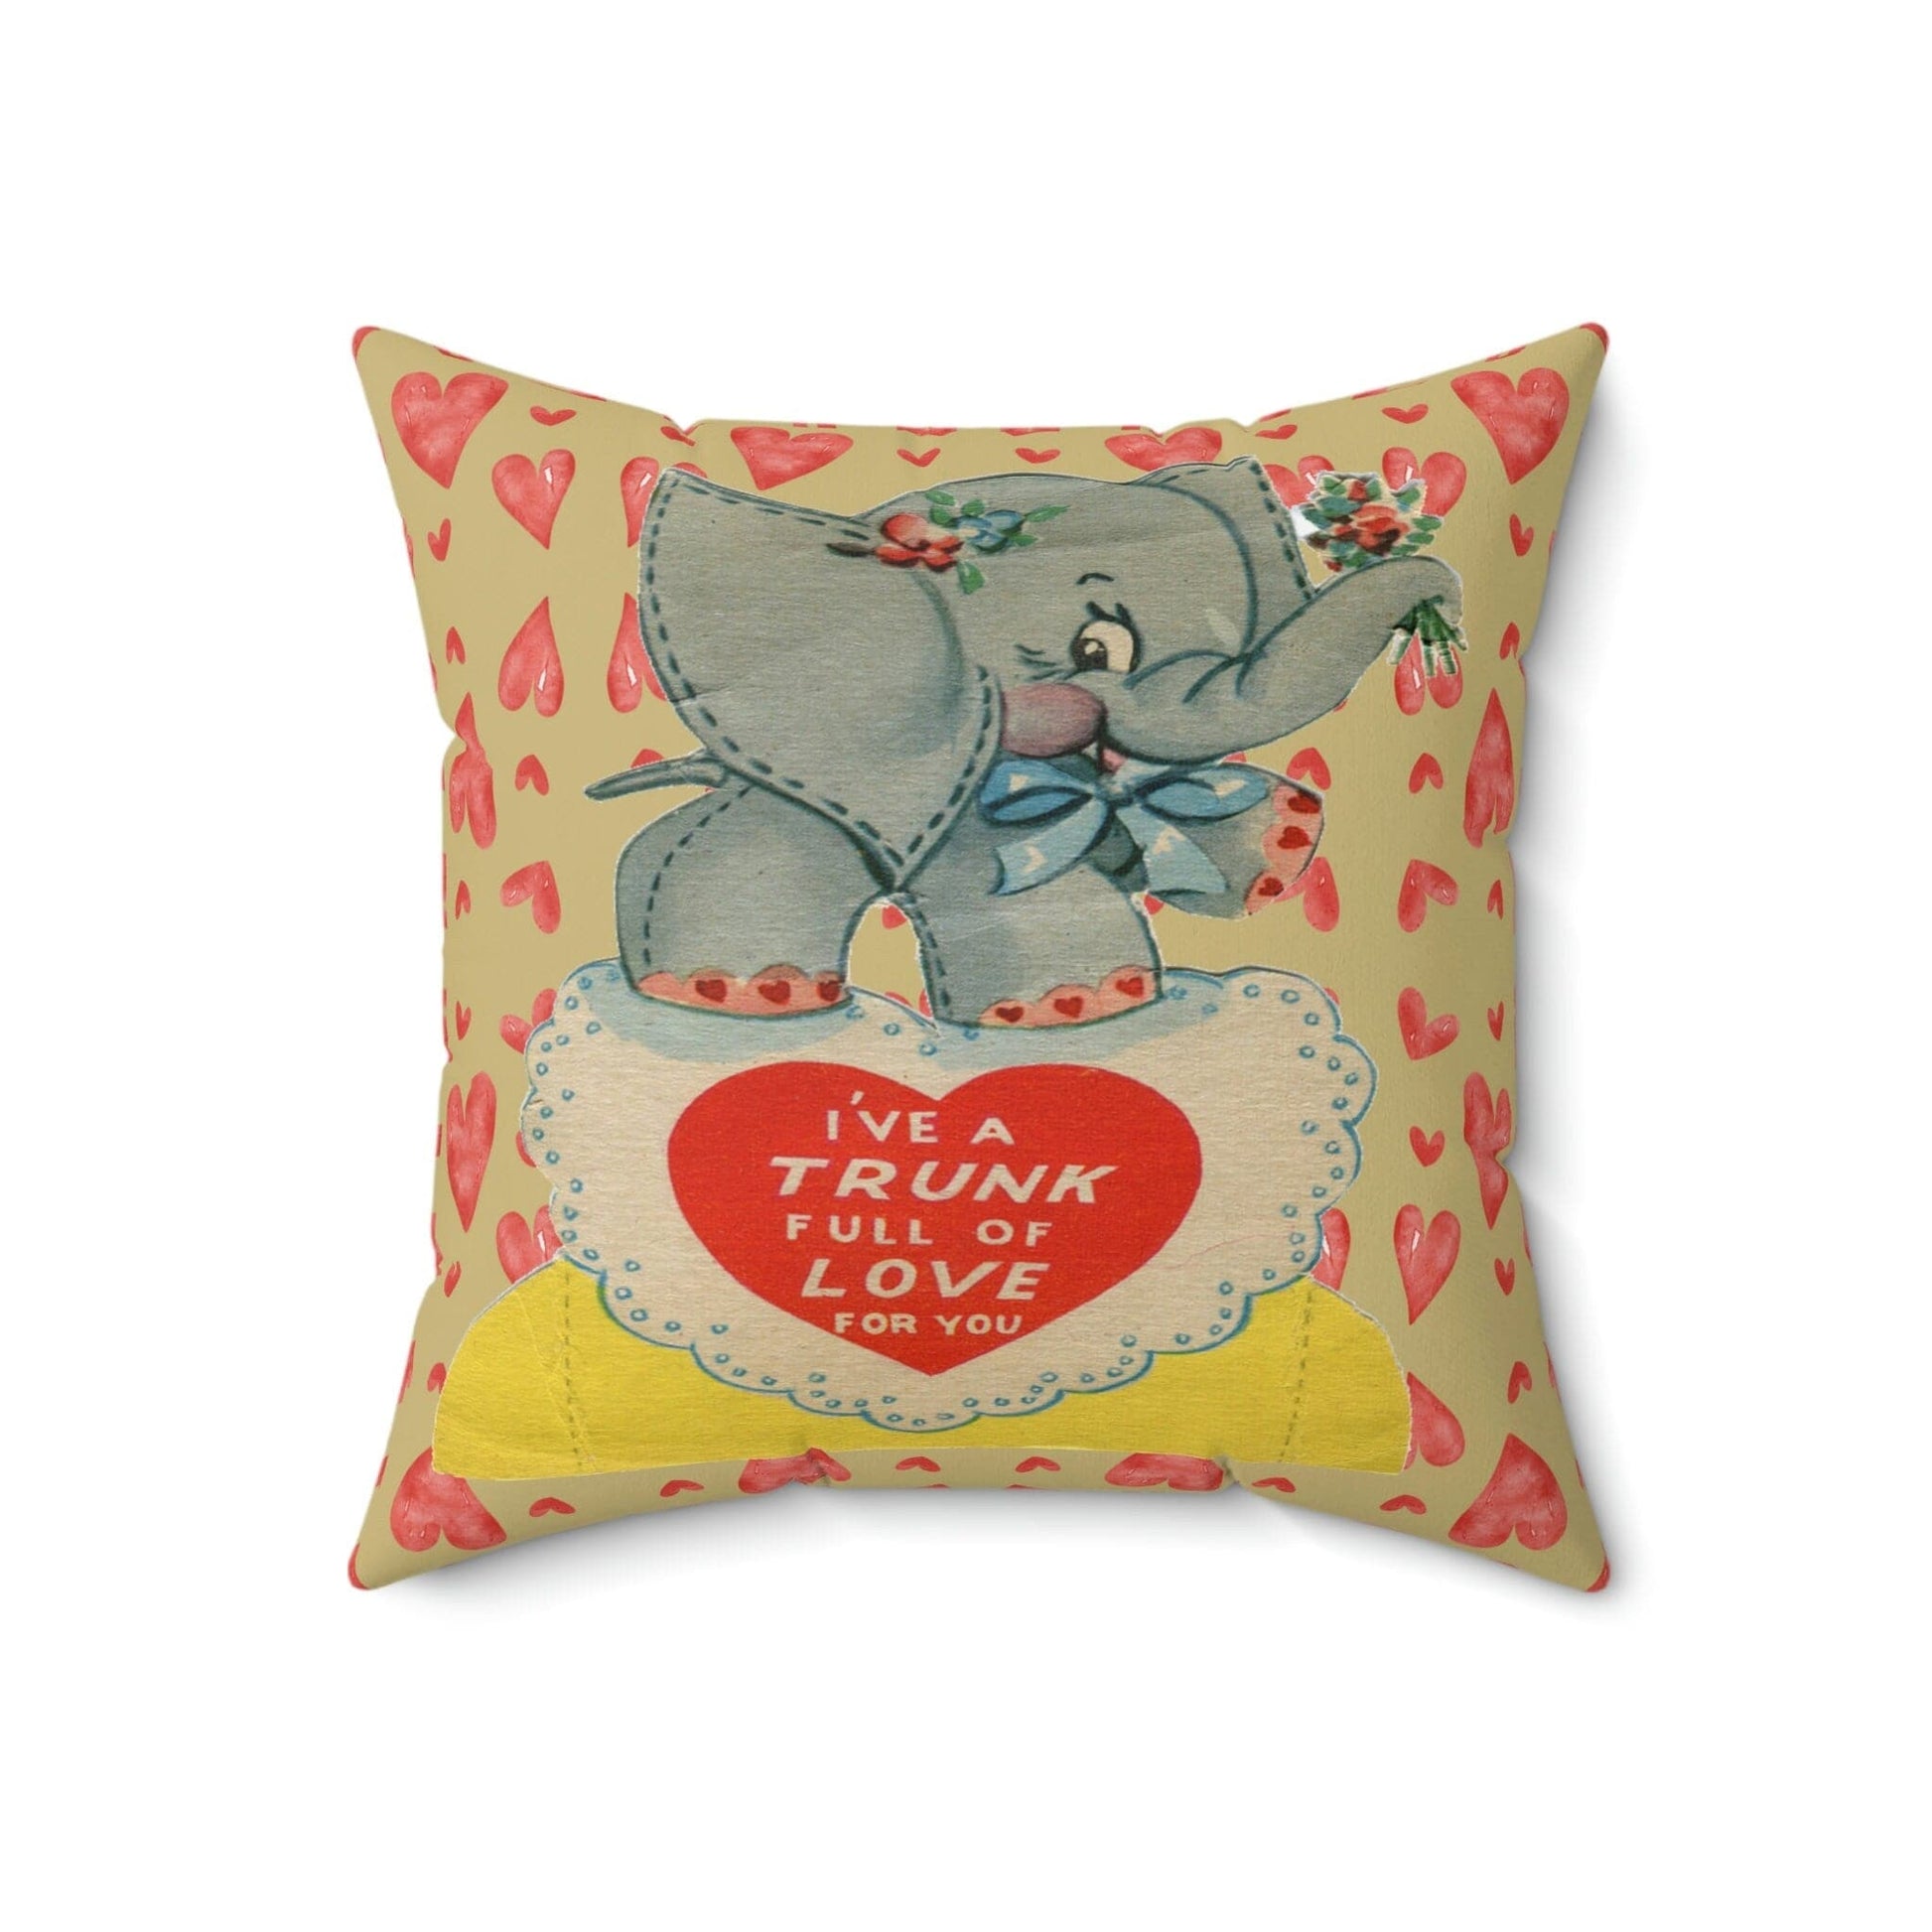 Kate McEnroe New York Retro Vintage Kitschy Elephant Valentine Throw Pillow Cover Throw Pillow Covers